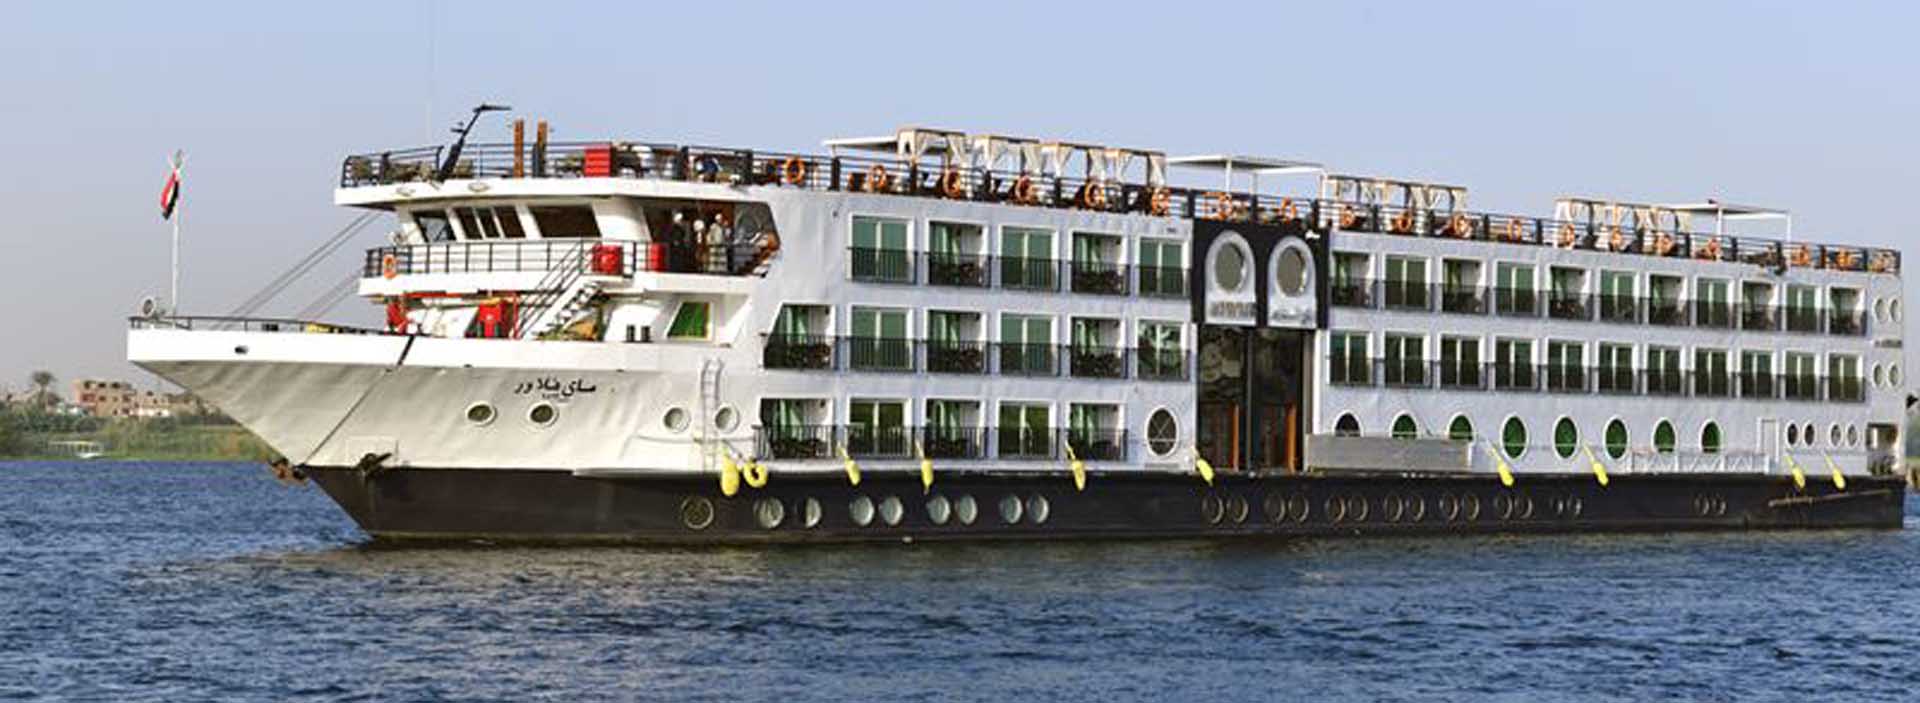 Mayflower Nile cruise